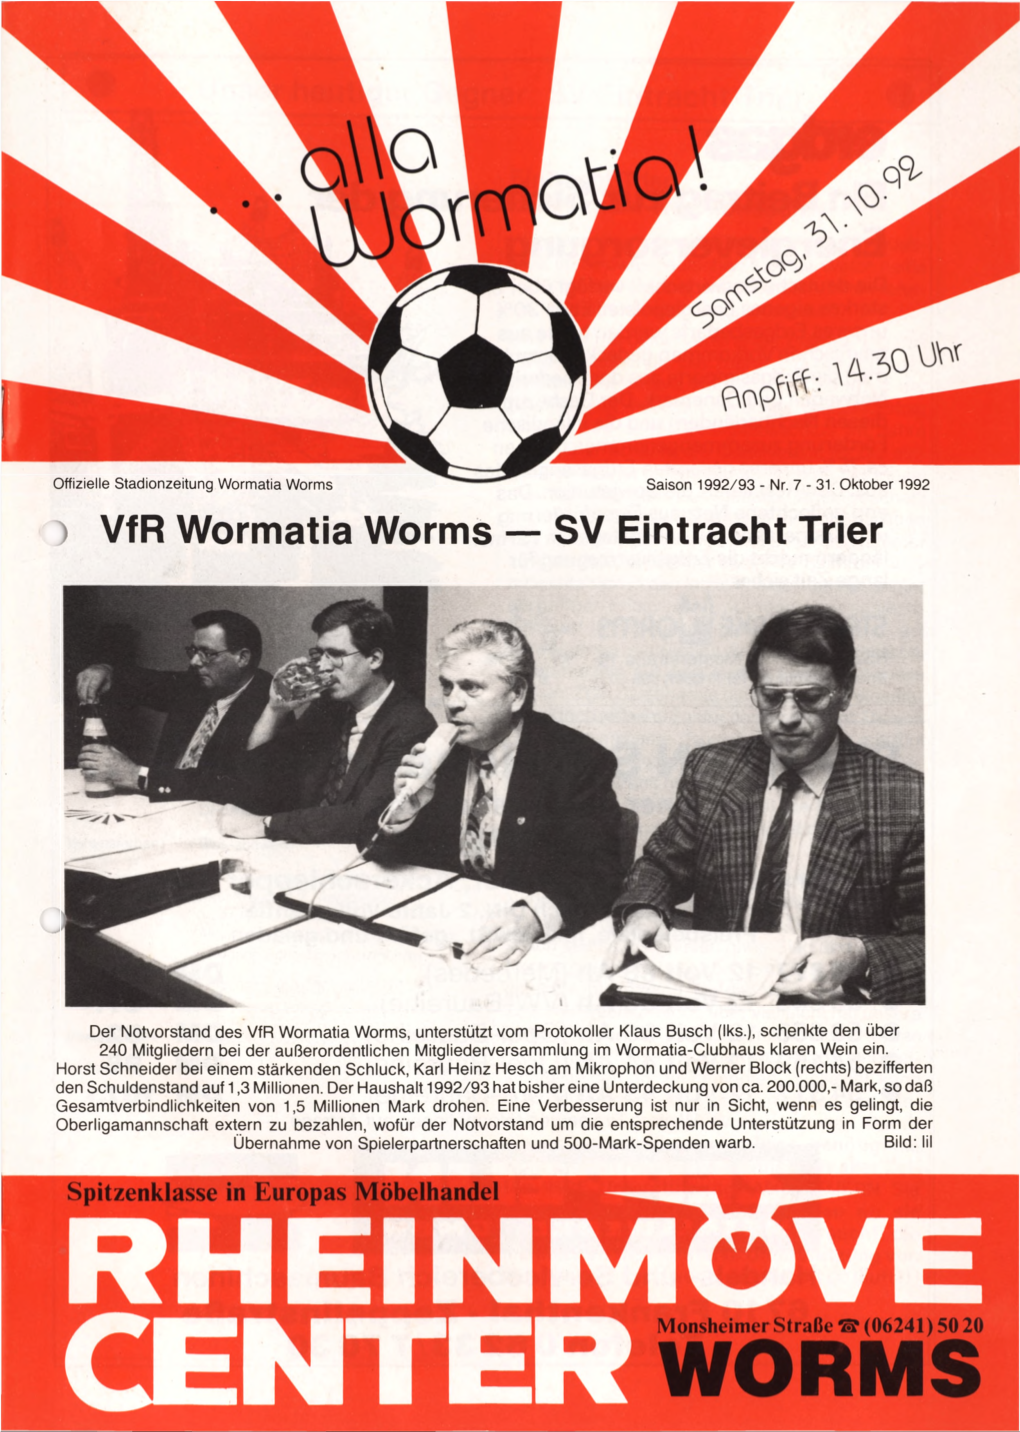 Vfr Wormatia Worms — SV Eintracht Trier